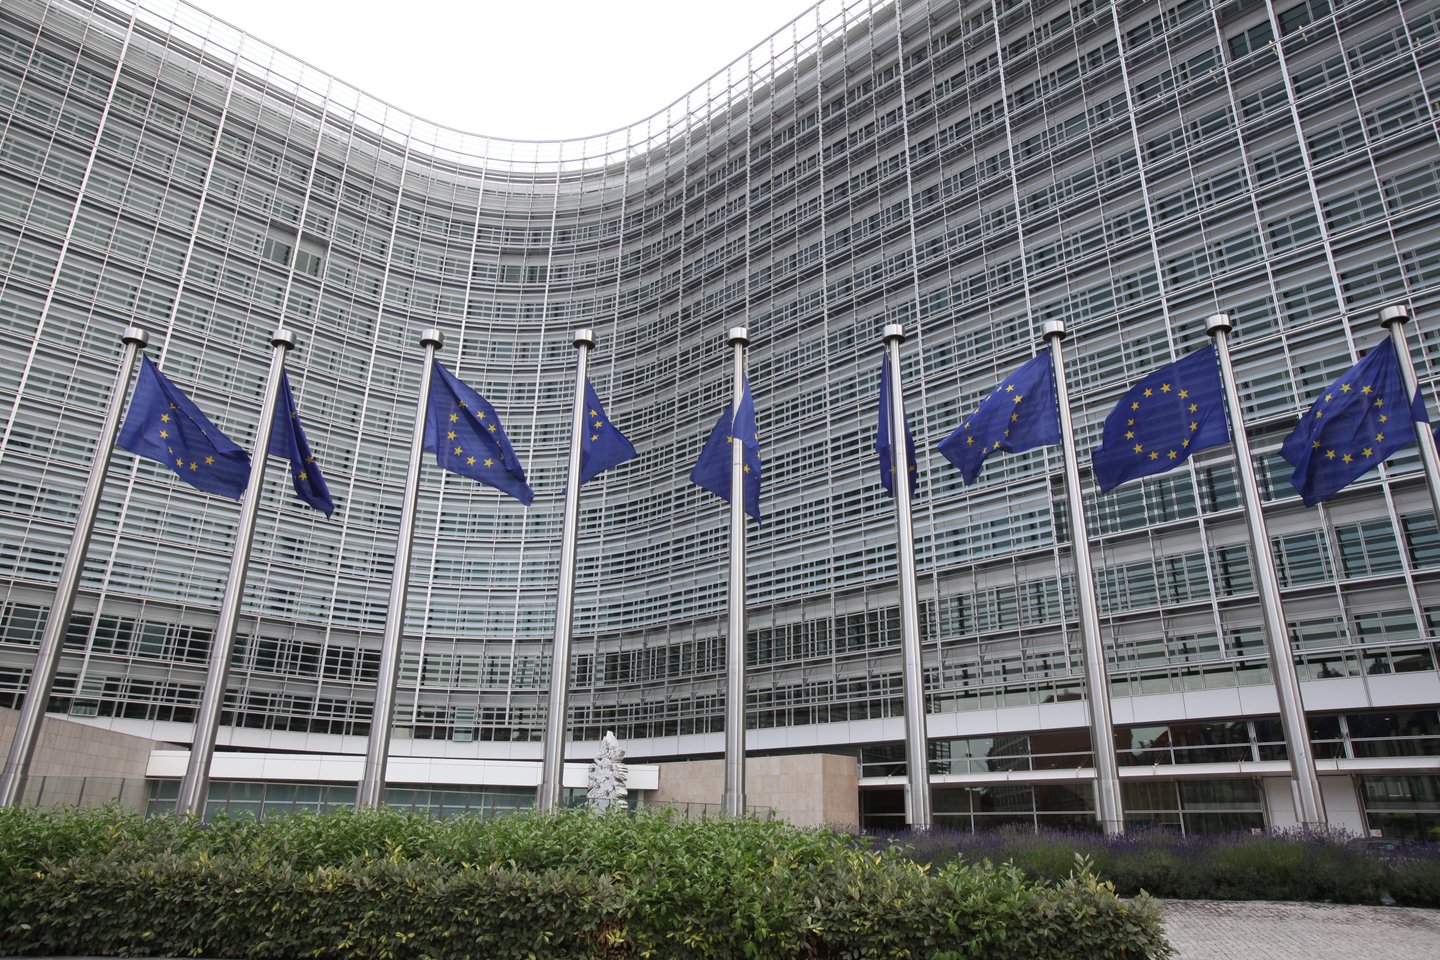 Europos Parlamentas antradienį atšaukė planus kitą savaitę surengti savo plenarinę sesiją Strasbūre, nes šis Prancūzijos miestas pateko į vadinamąją „raudonąją zoną“ dėl koronaviruso.<br>P.Lileikio nuotr.